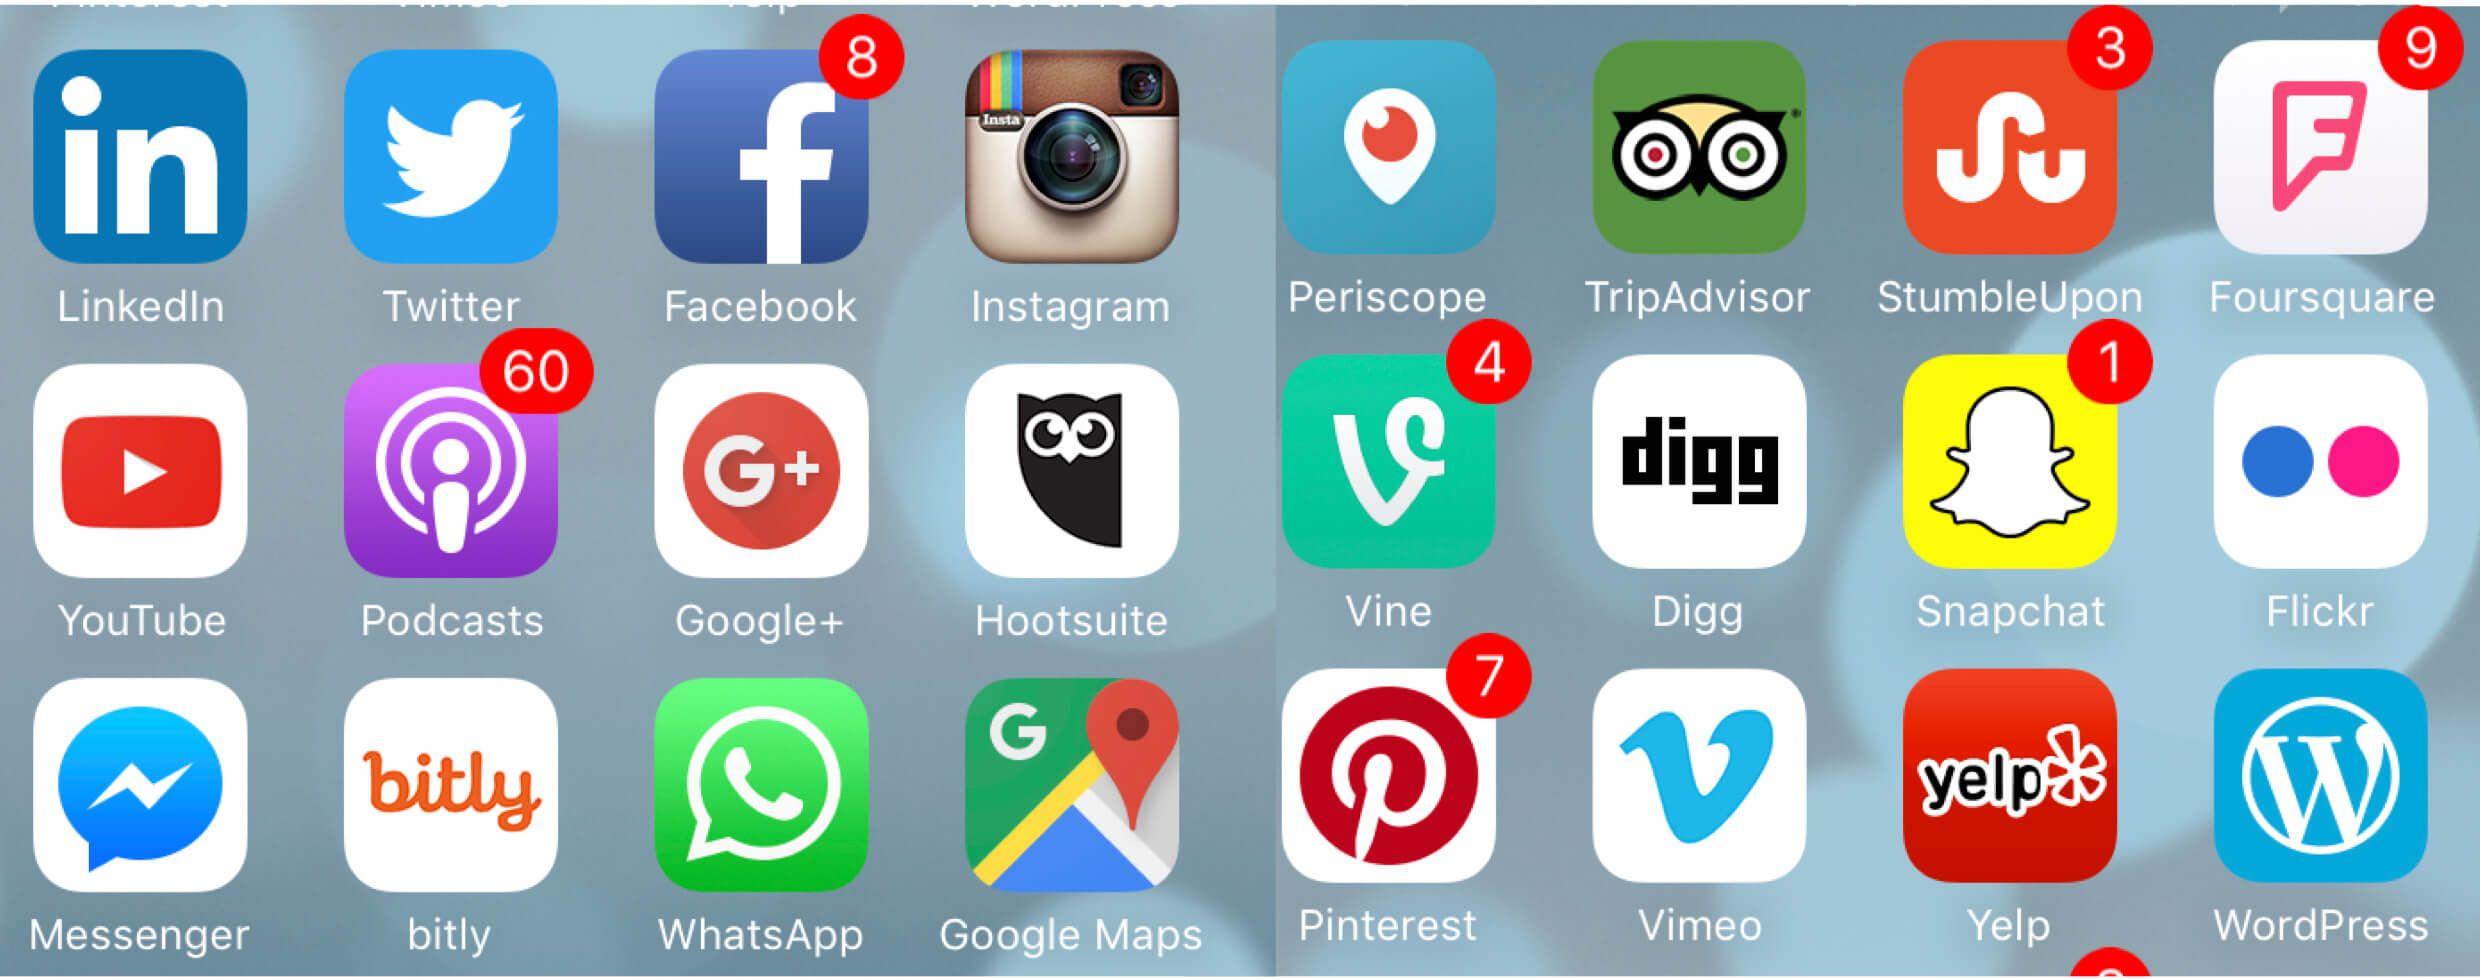 Social Media Apps 2017 Logo - Most Popular Social Media Apps - Cyberbullying Research Center